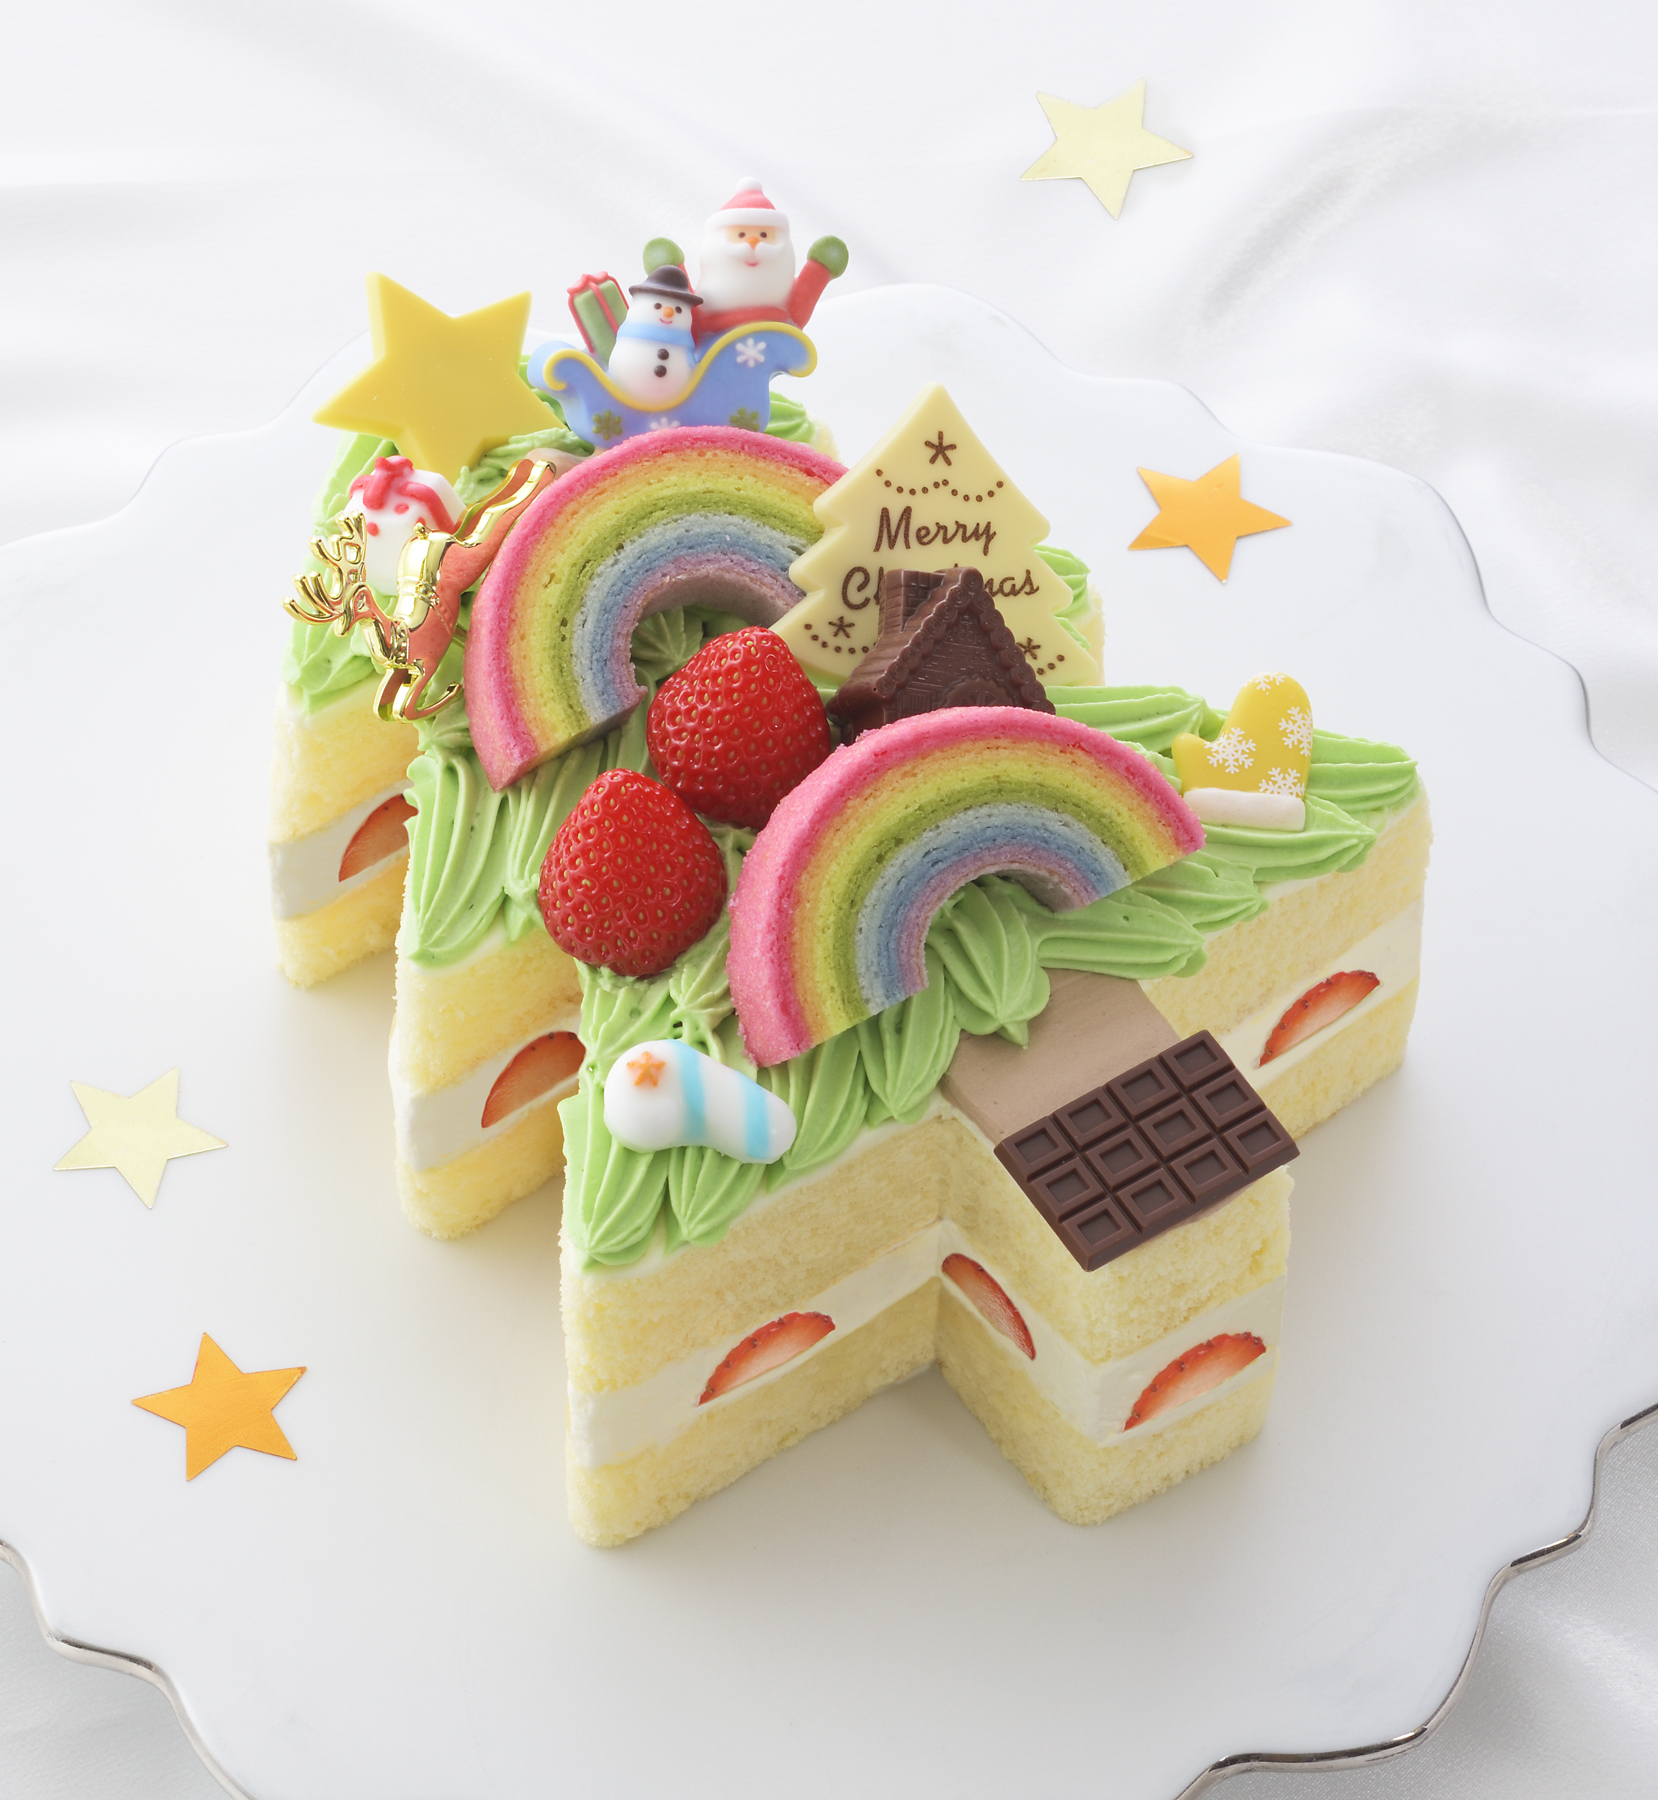 夢いっぱいのイラストが 本物のクリスマスケーキに 16 Kid S Dream Cake 予約受付開始 株式会社銀座コージーコーナーのプレスリリース